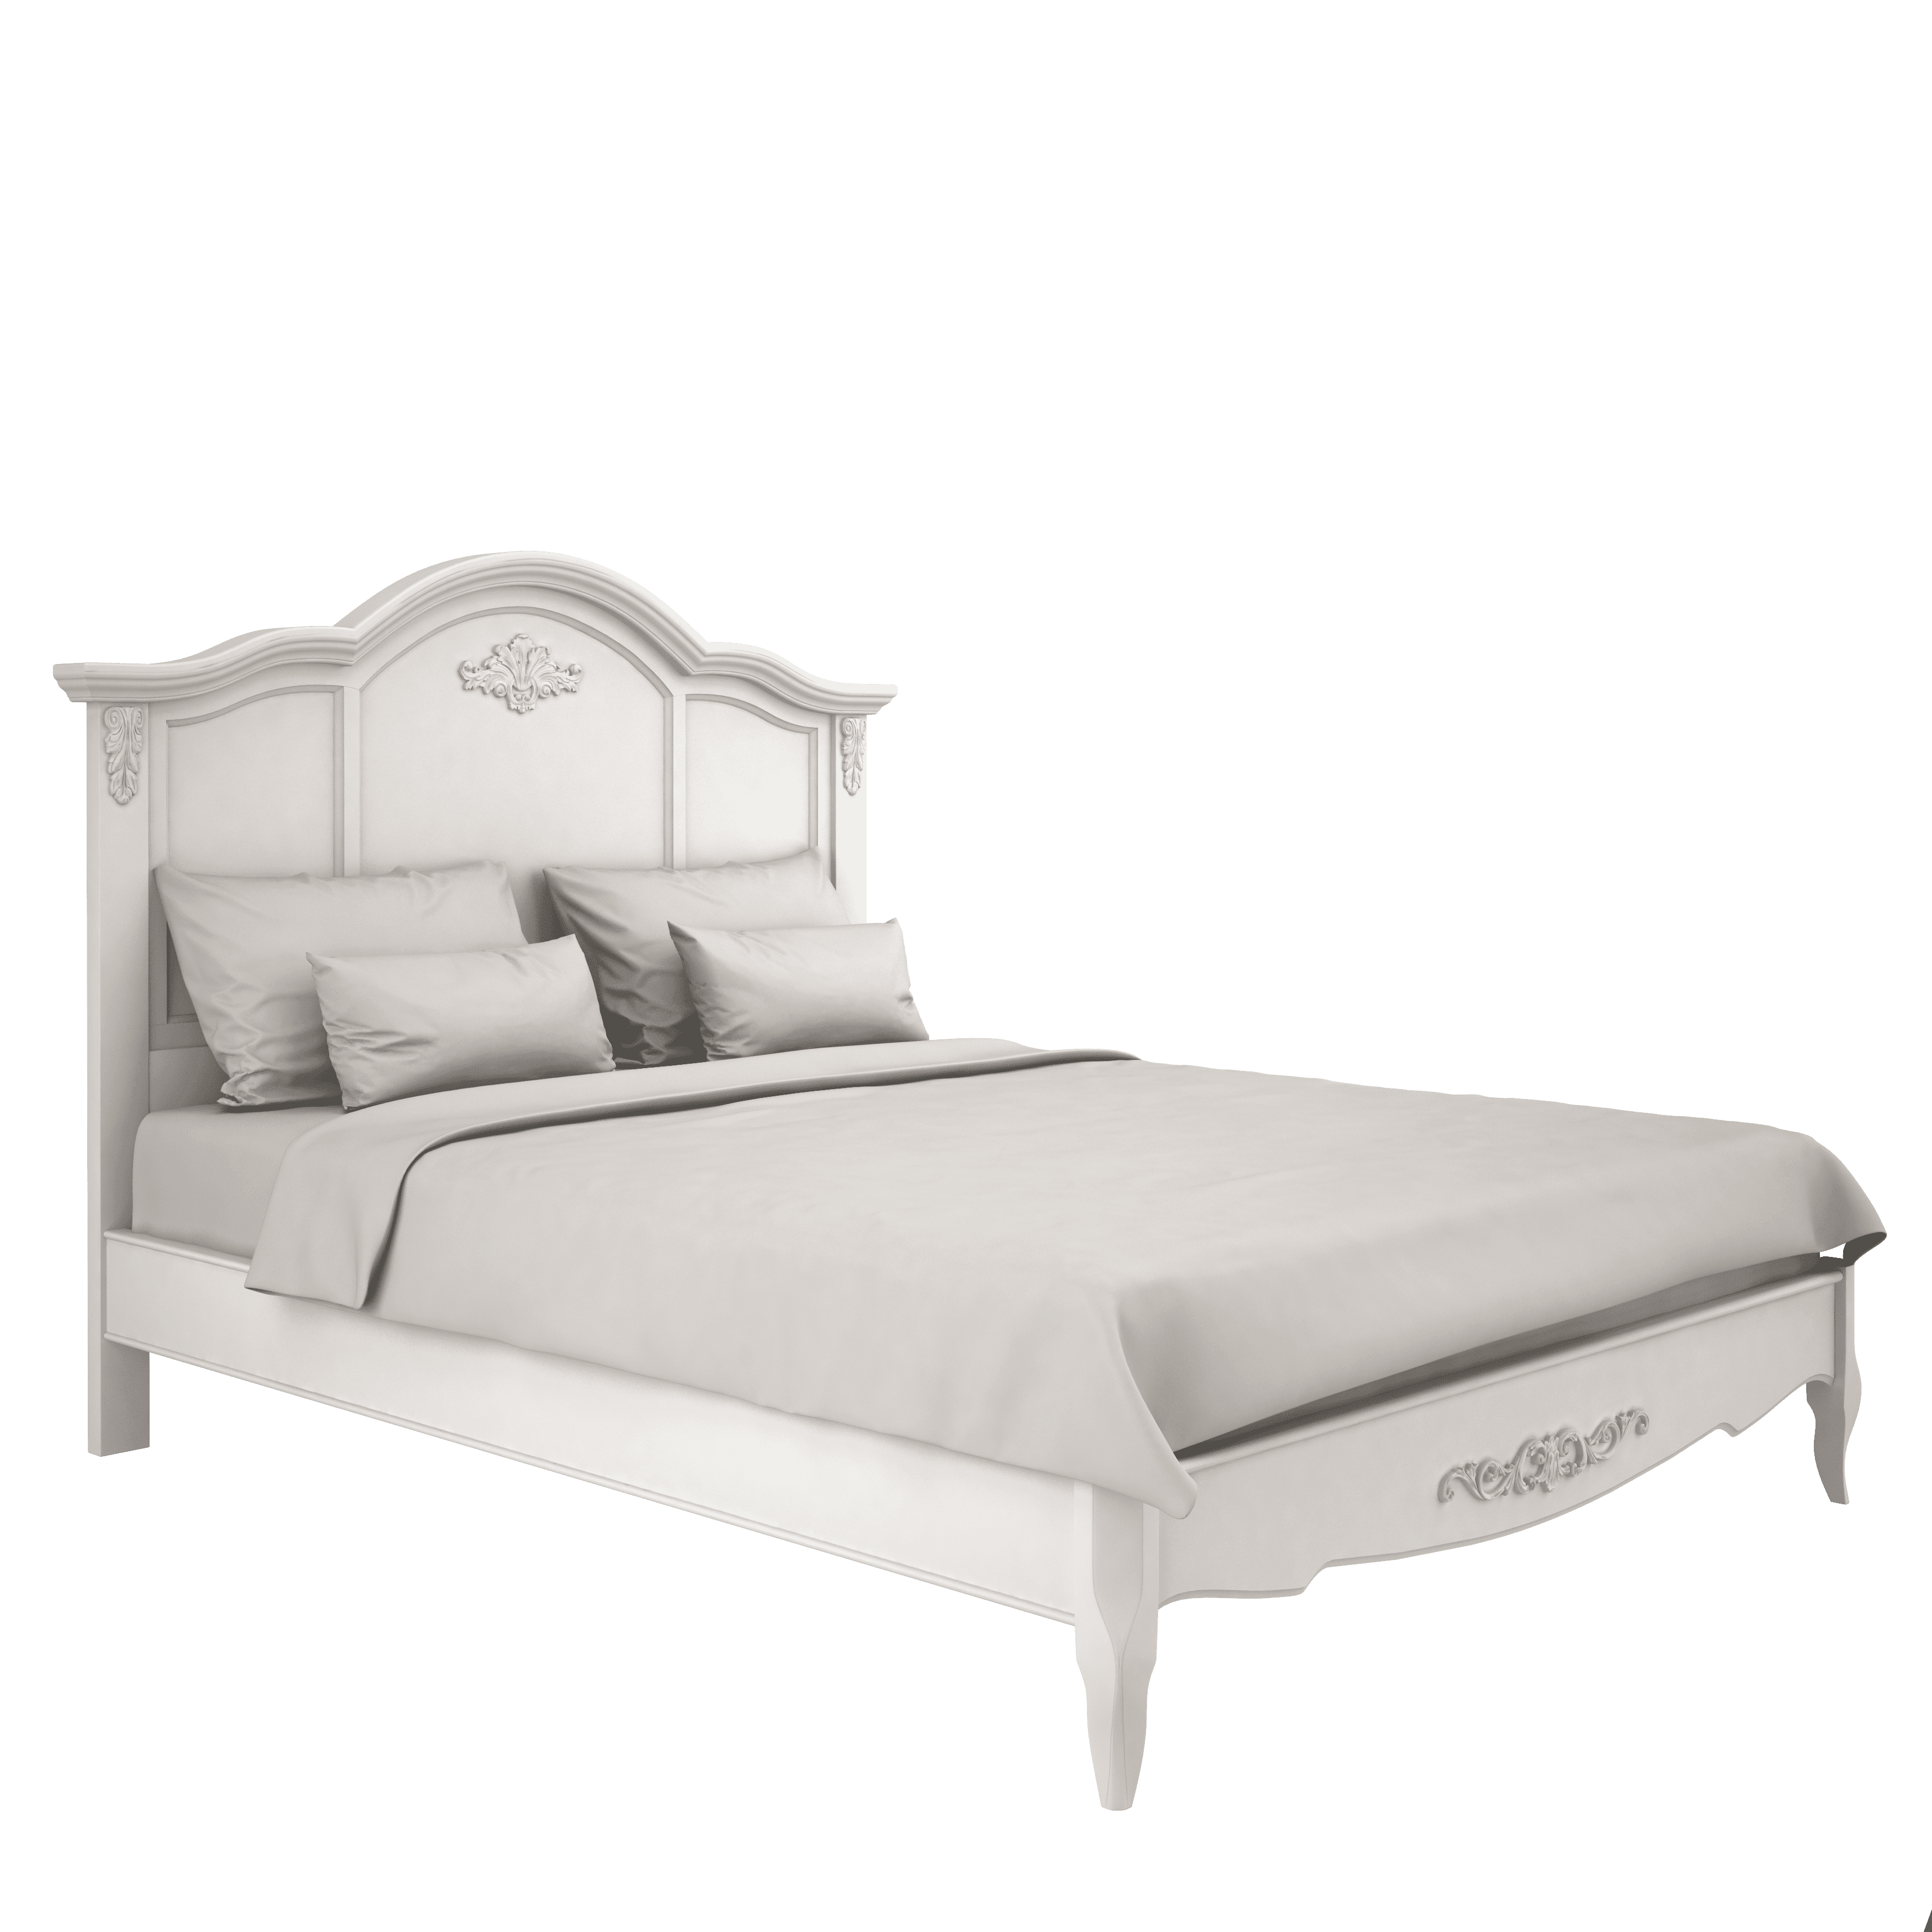 Кровать Aletan Provence, полуторная, 140x200 см, цвет: слоновая кость, размер 158х211х123 см (B204)B204